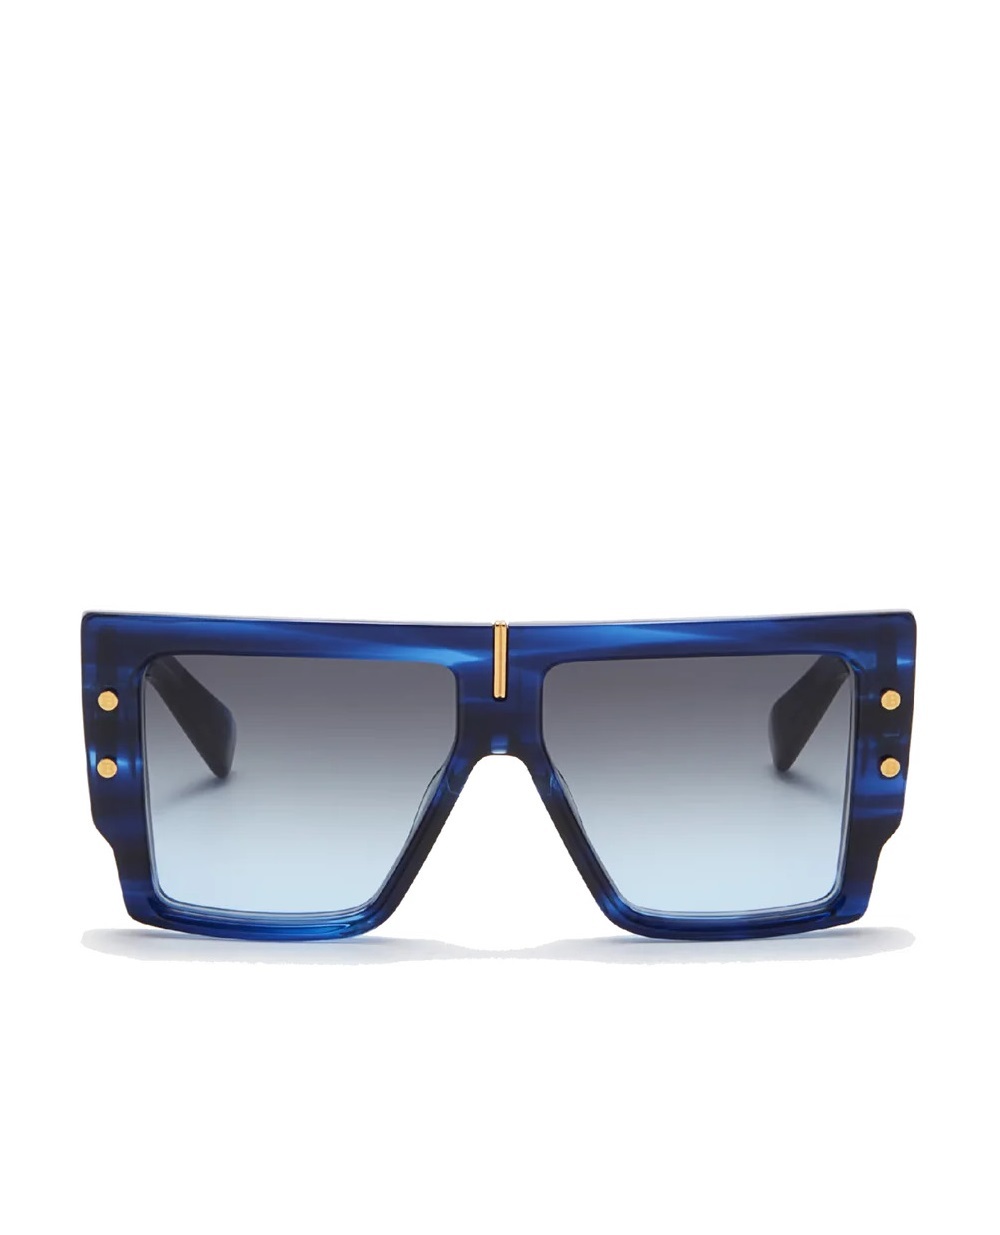 Солнцезащитные очки B-Grand Balmain BPS-144B-57, синий цвет • Купить в интернет-магазине Kameron